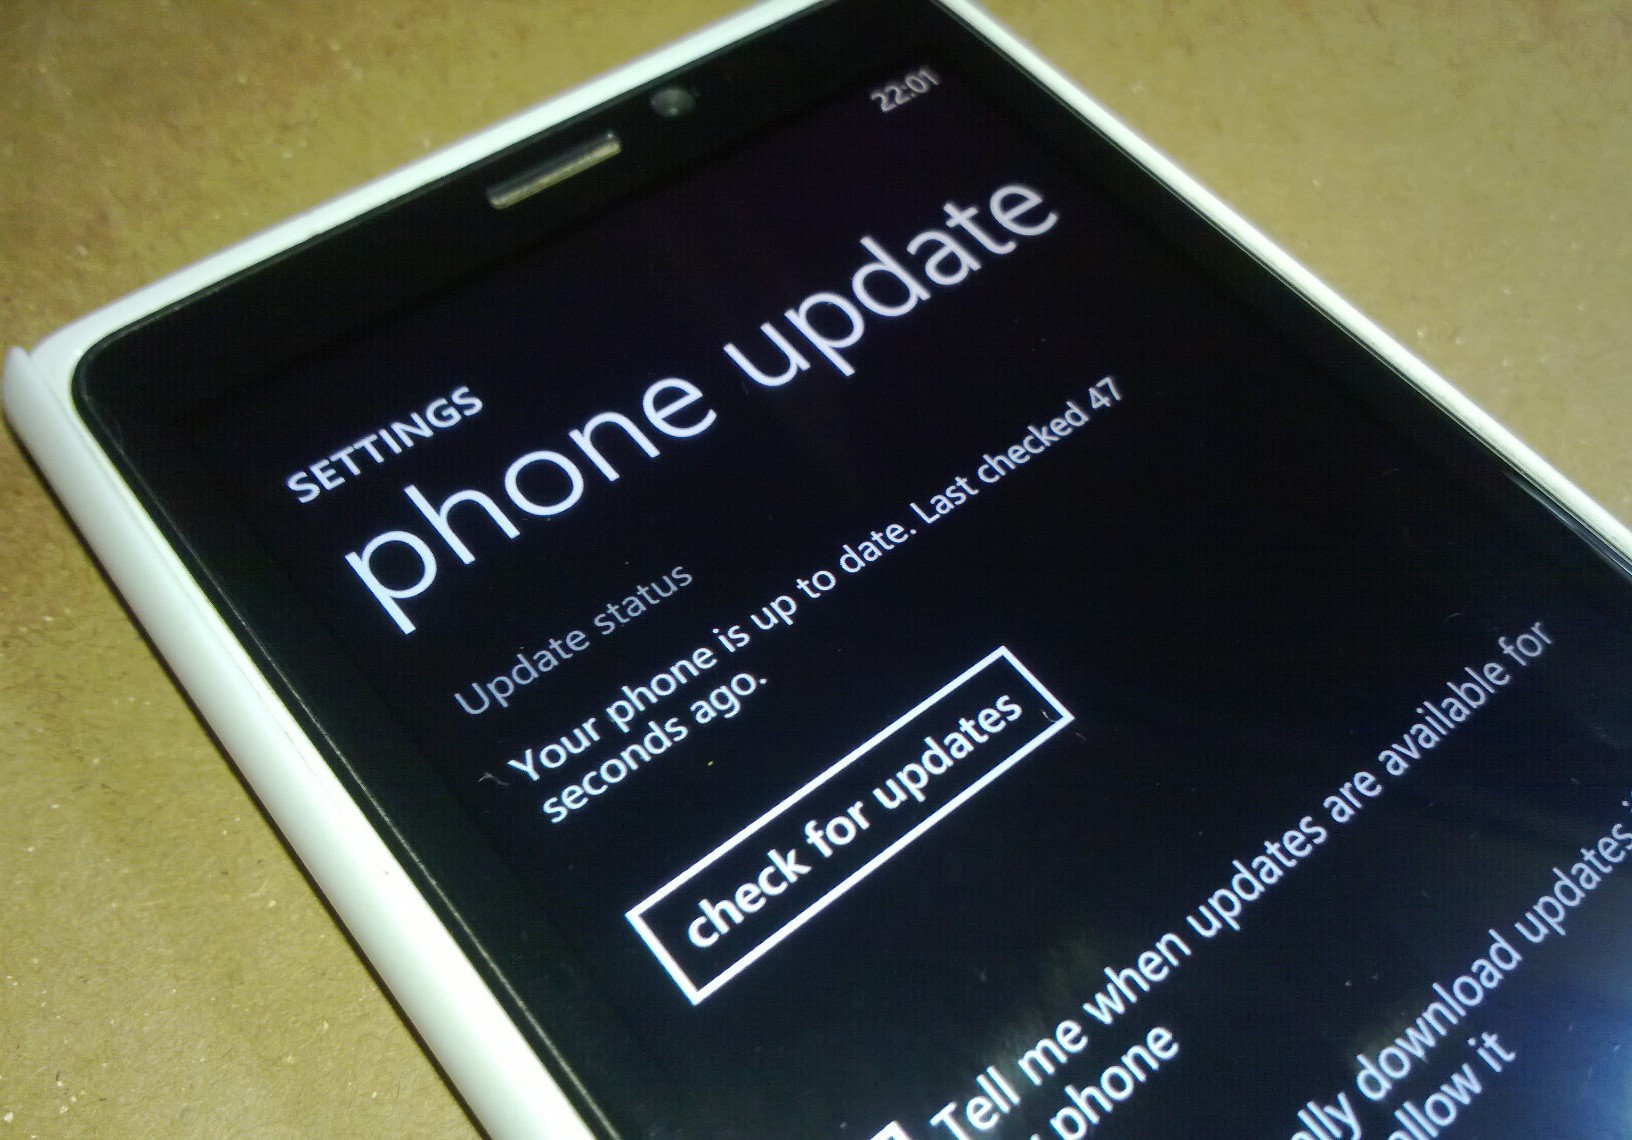 Windows-Phone-Update-check.jpg